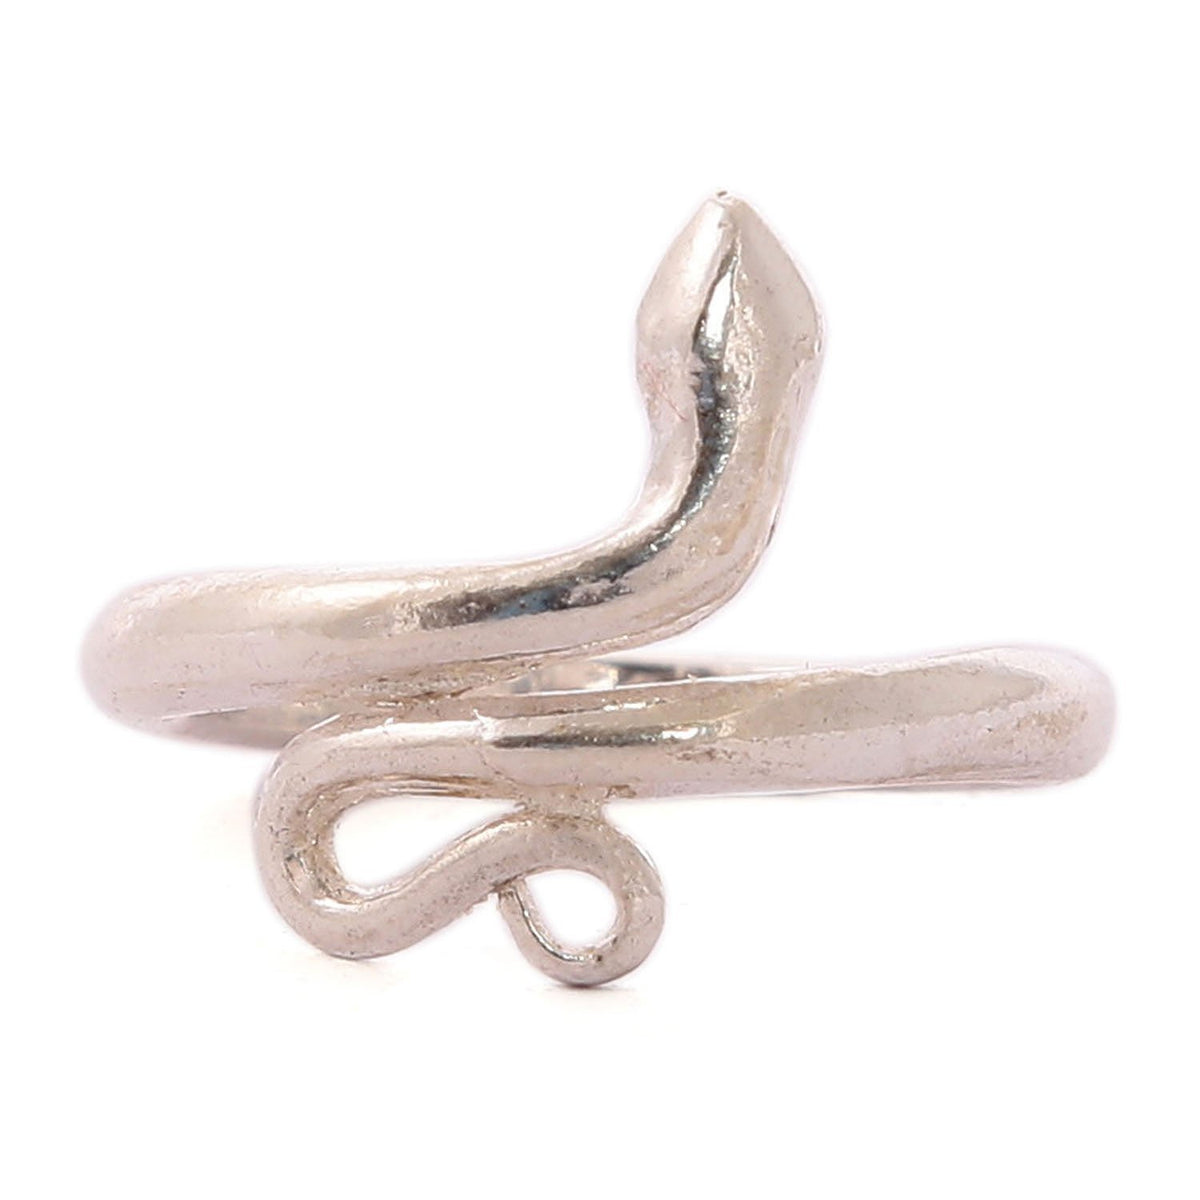 तांबे की अंगूठी पहनने के लाभ | Copper Ring Benefits In Hindi